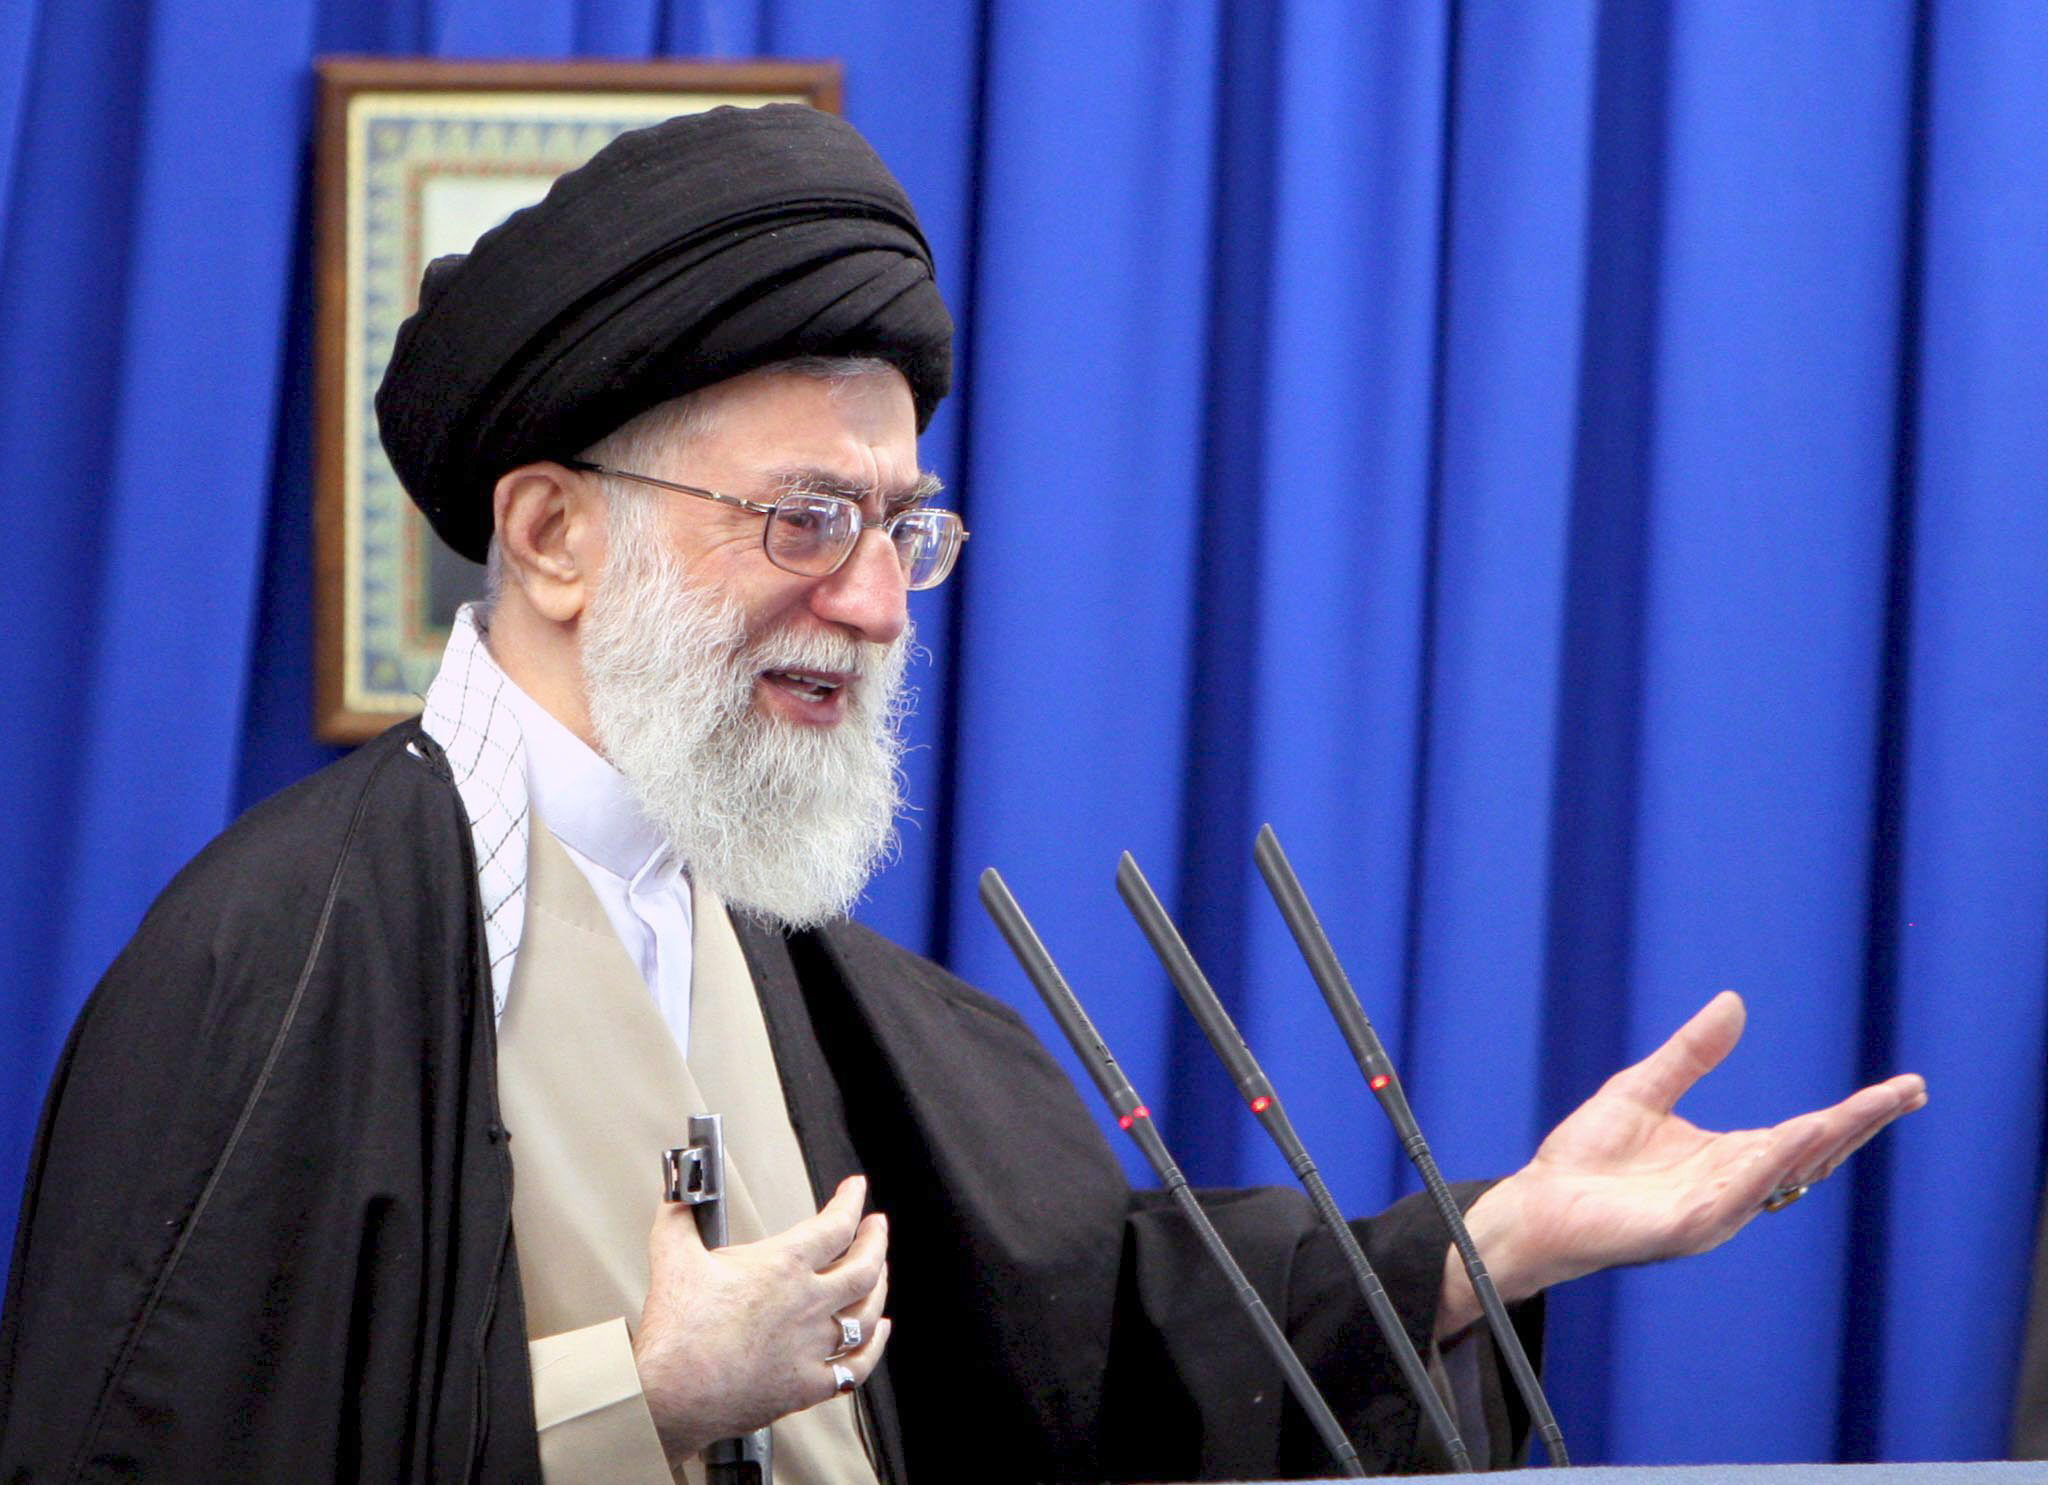 Jamenei aseguró que Irán ha logrado un gran desarrollo en el terreno nuclear sin la ayuda de nadie.